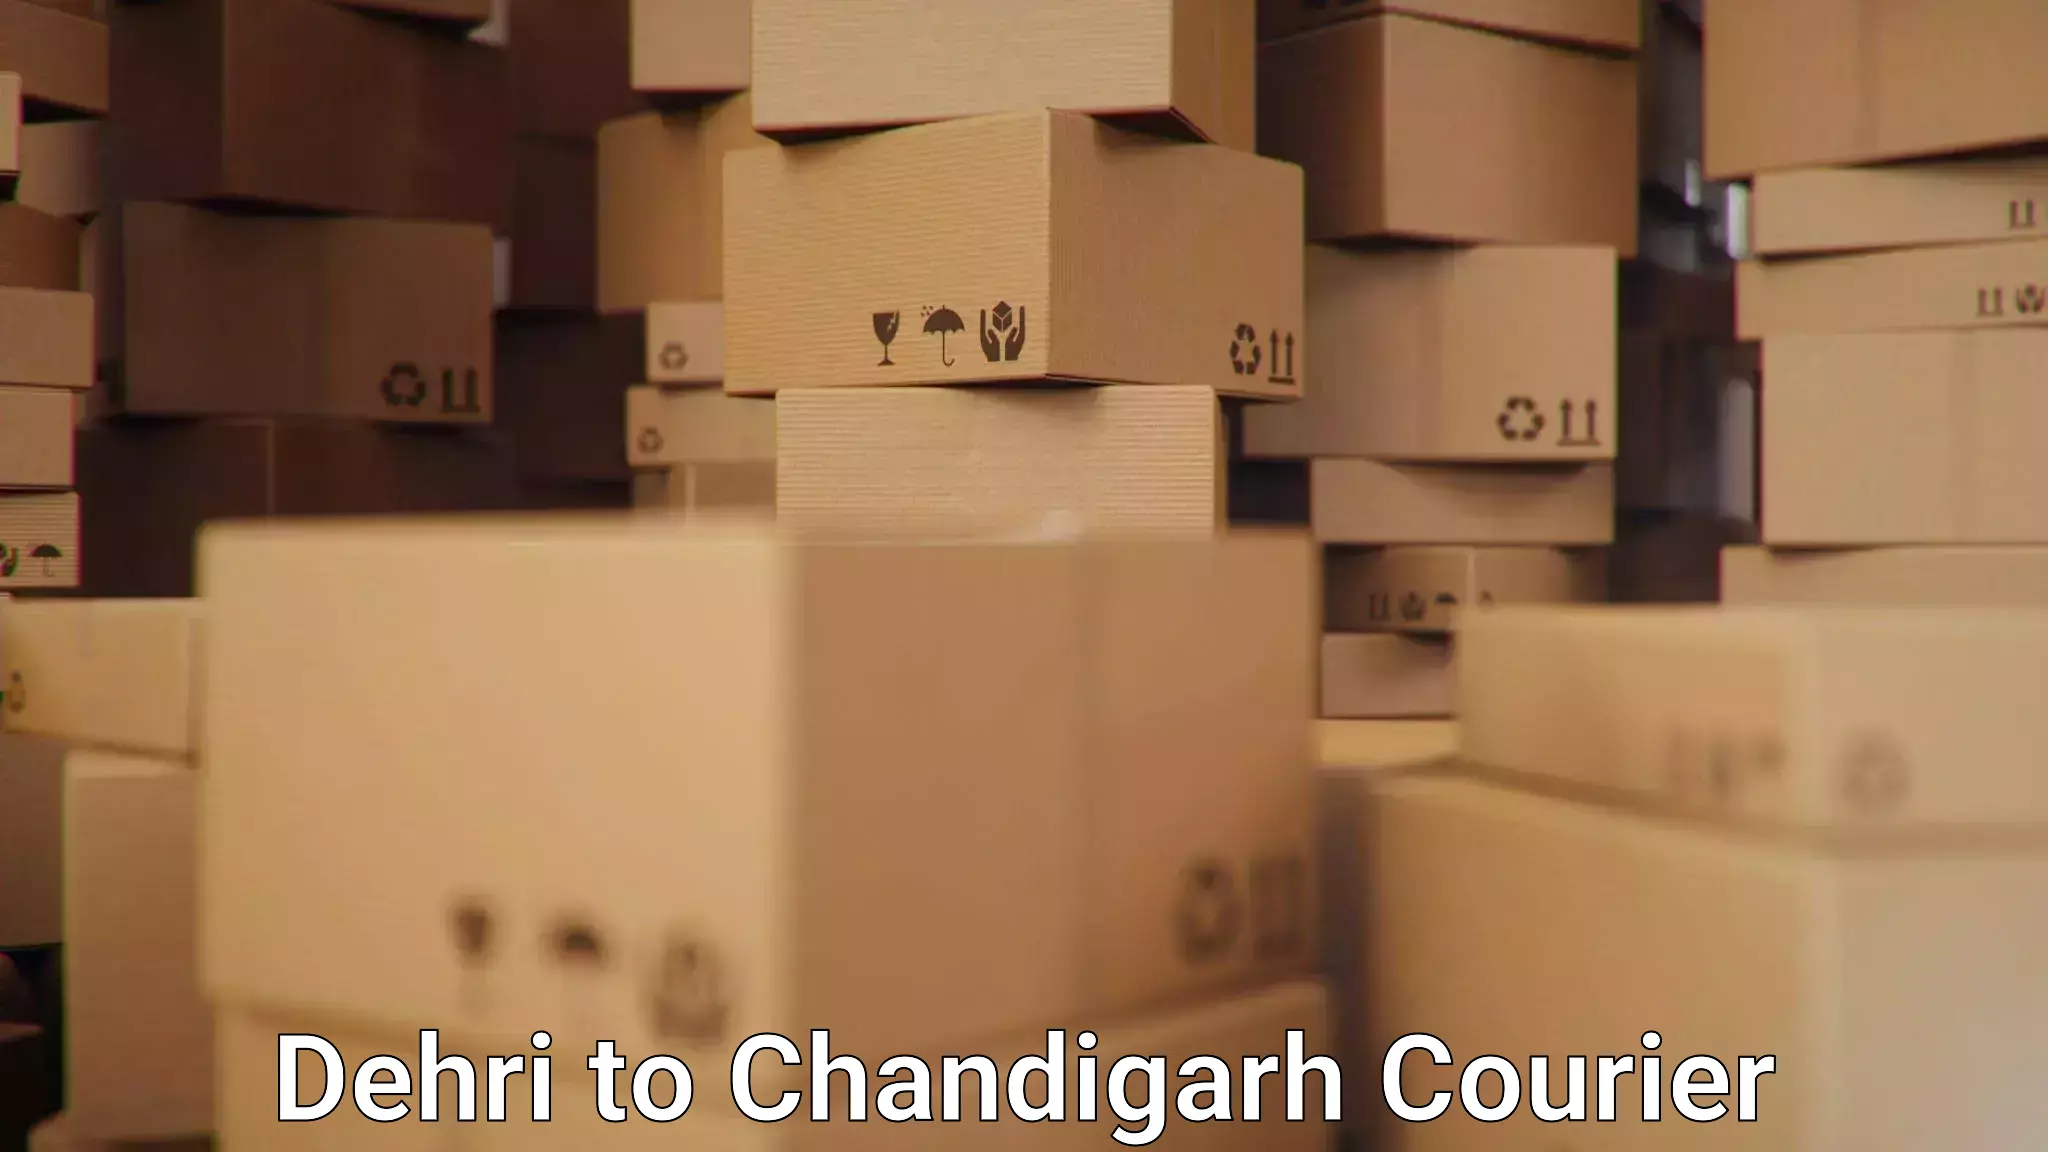 Premium courier services Dehri to Chandigarh